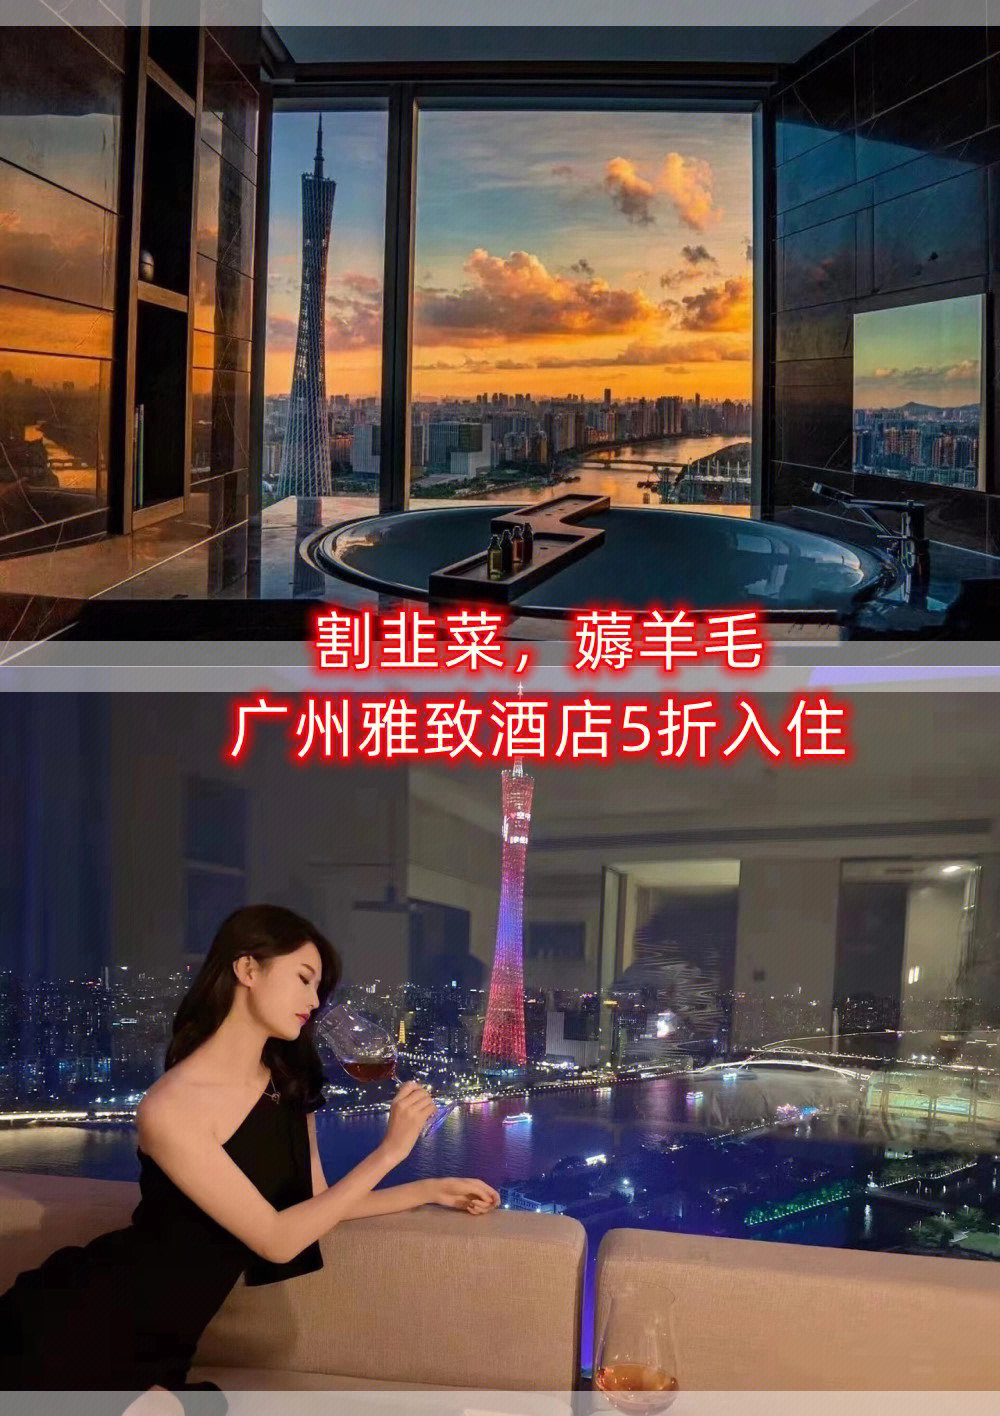 78156997广州雅致酒店是美豪集团旗下的高端五星酒店,2022年